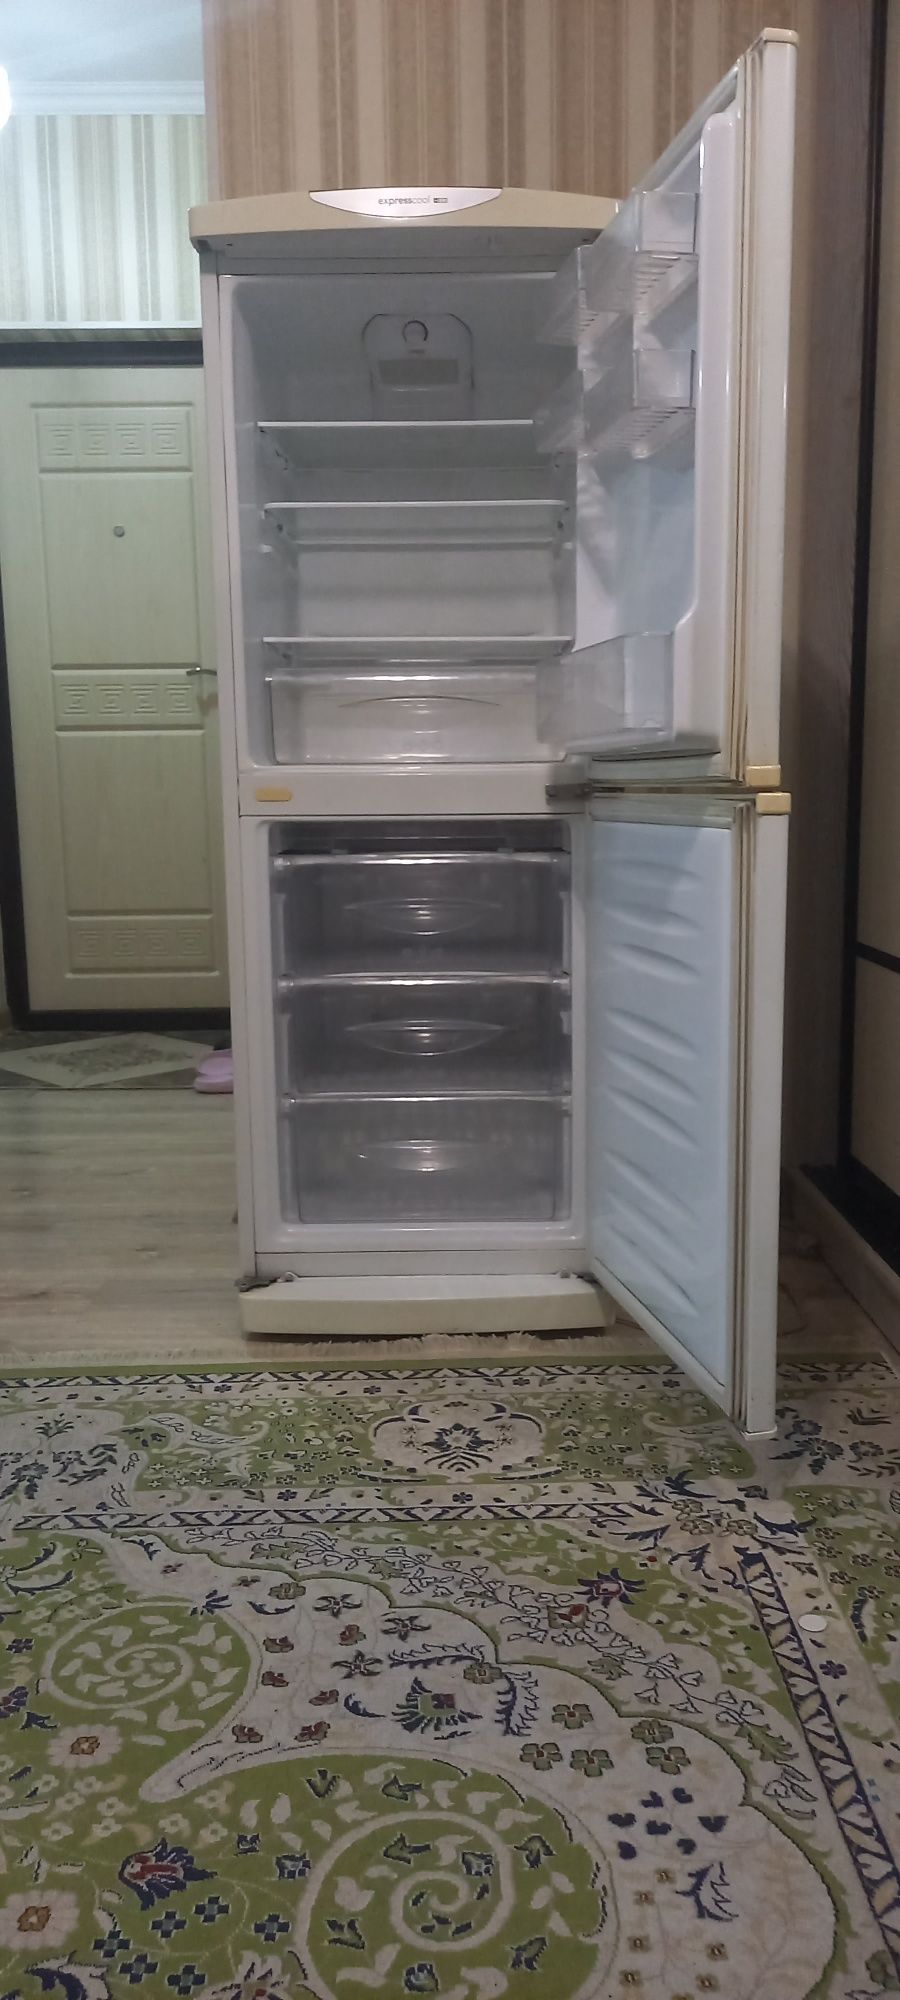 Продам холодильник LG б/у в хорошем состоянии. Высота 150 см ширина 55